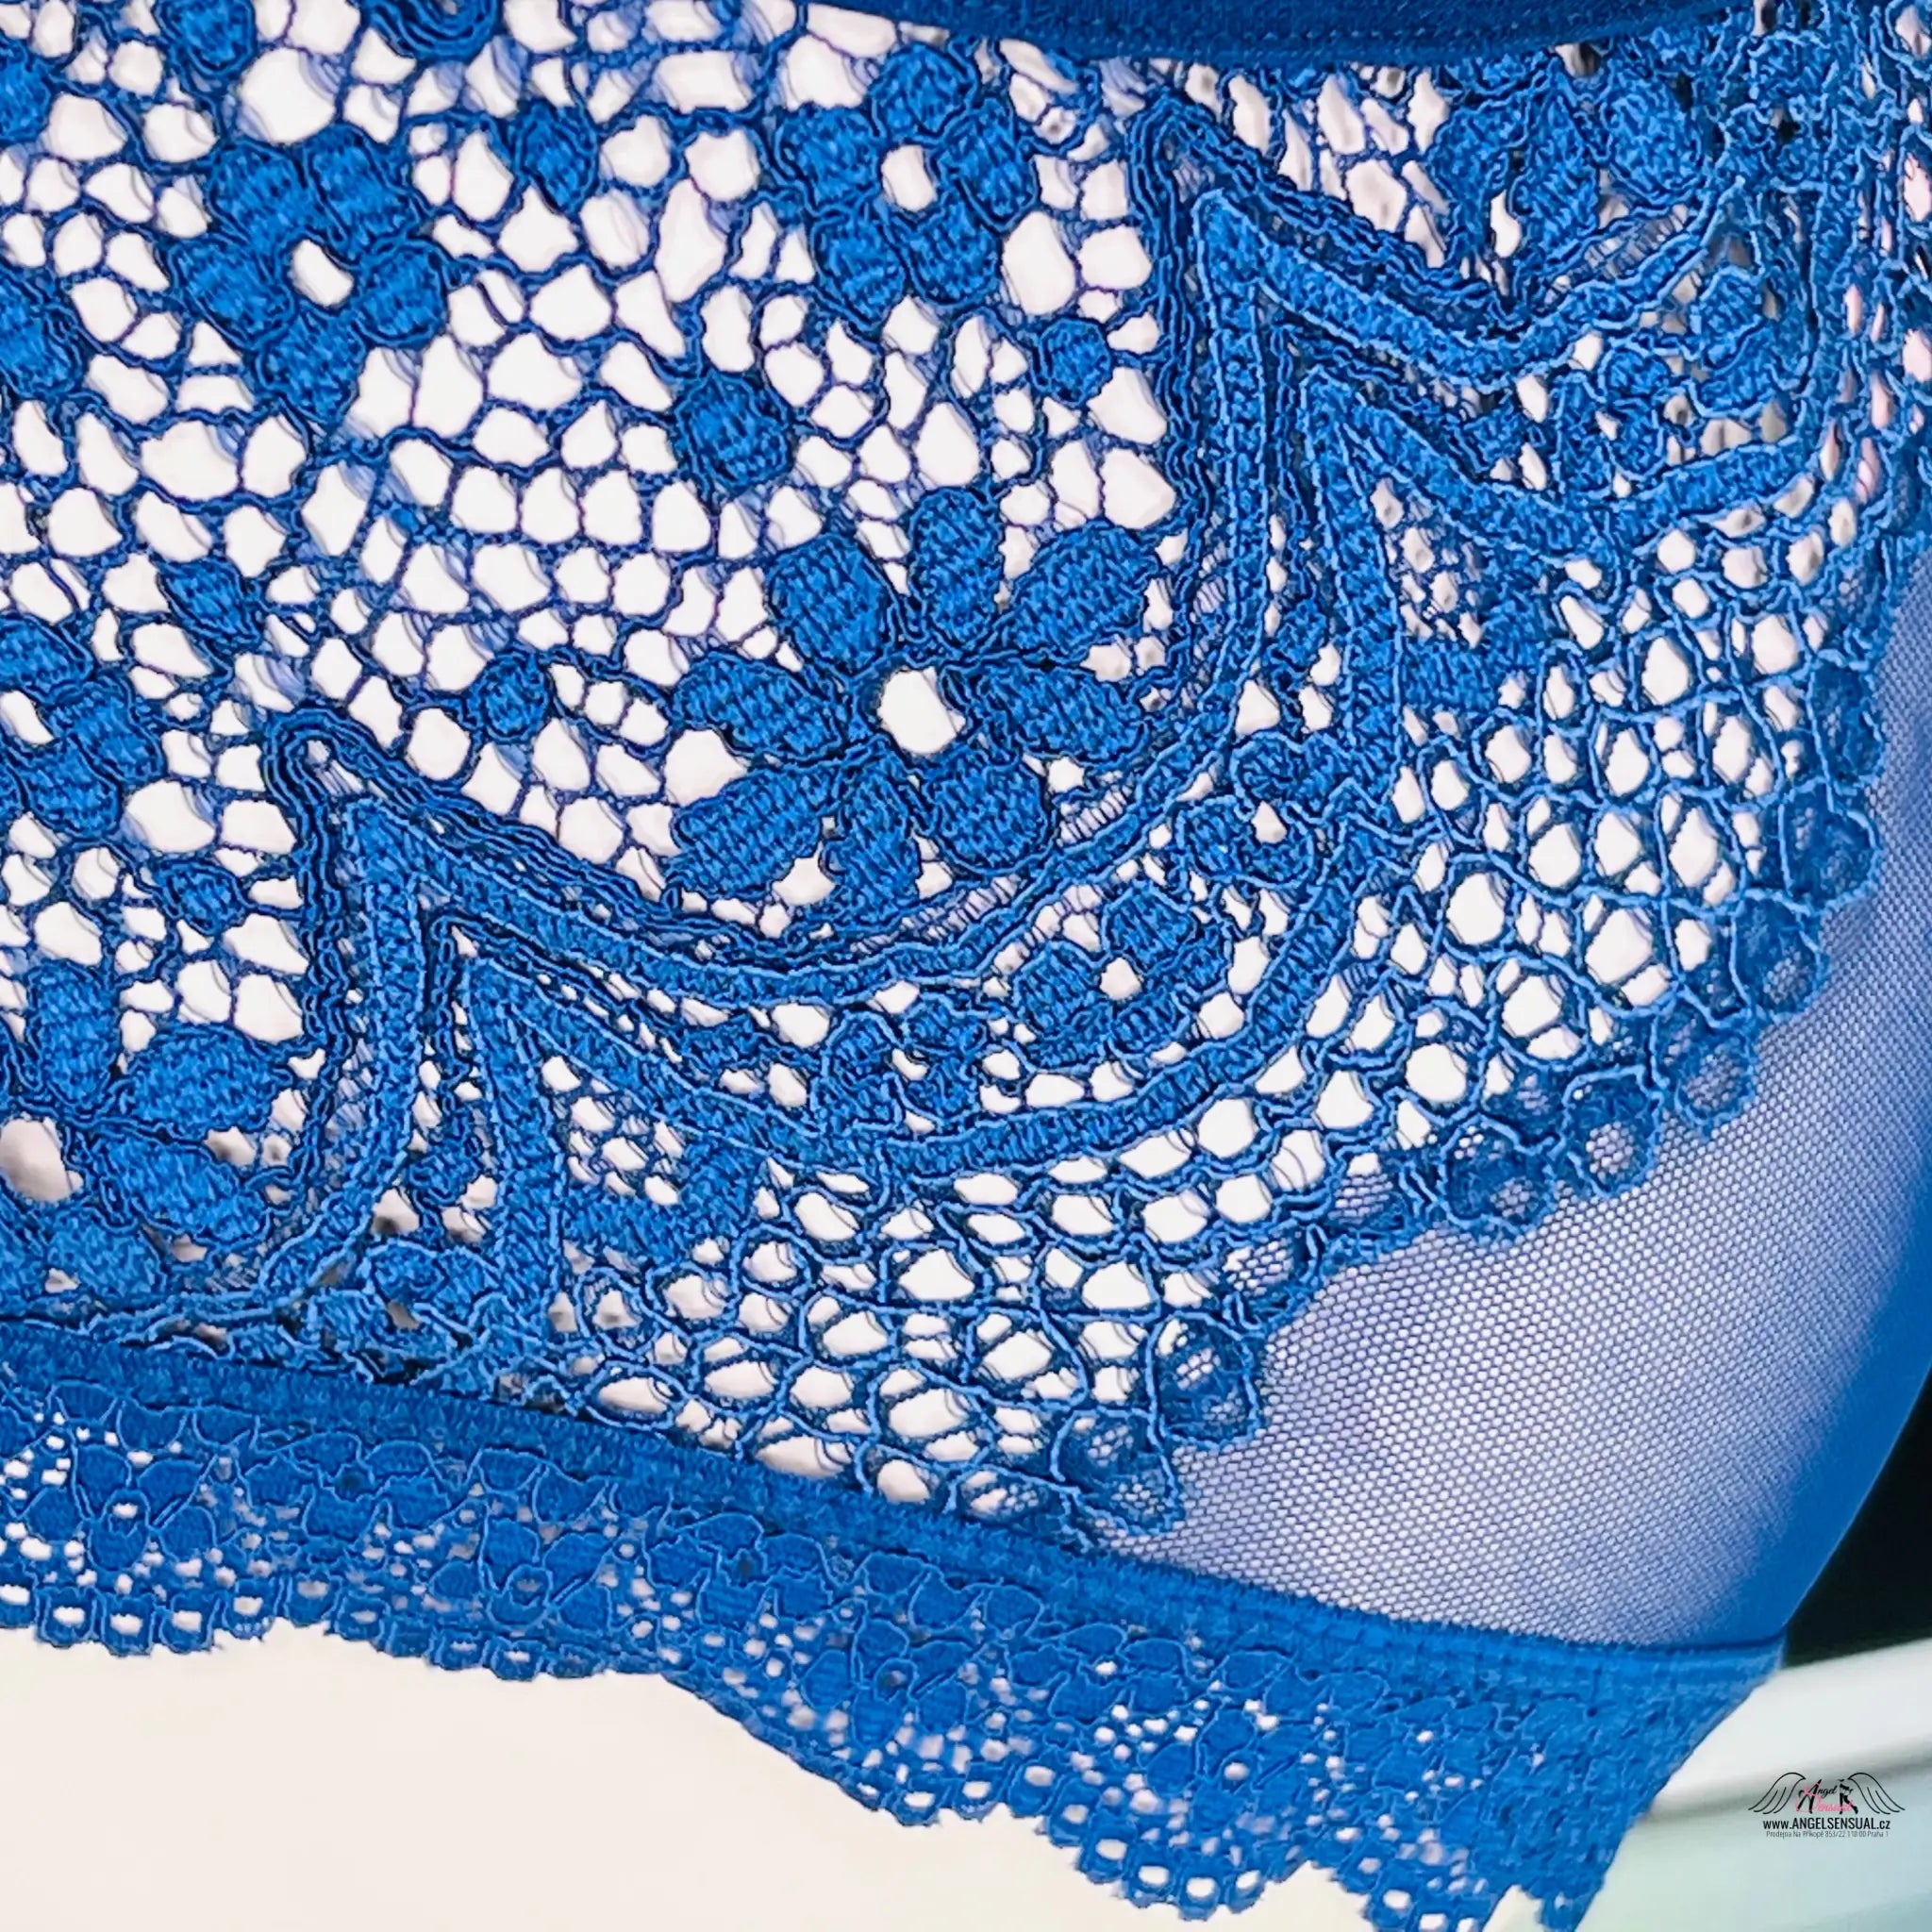 Síťované kalhotky s krajkou - L / Královská modř / Nové se štítky - Kalhotky Victoria’s Secret